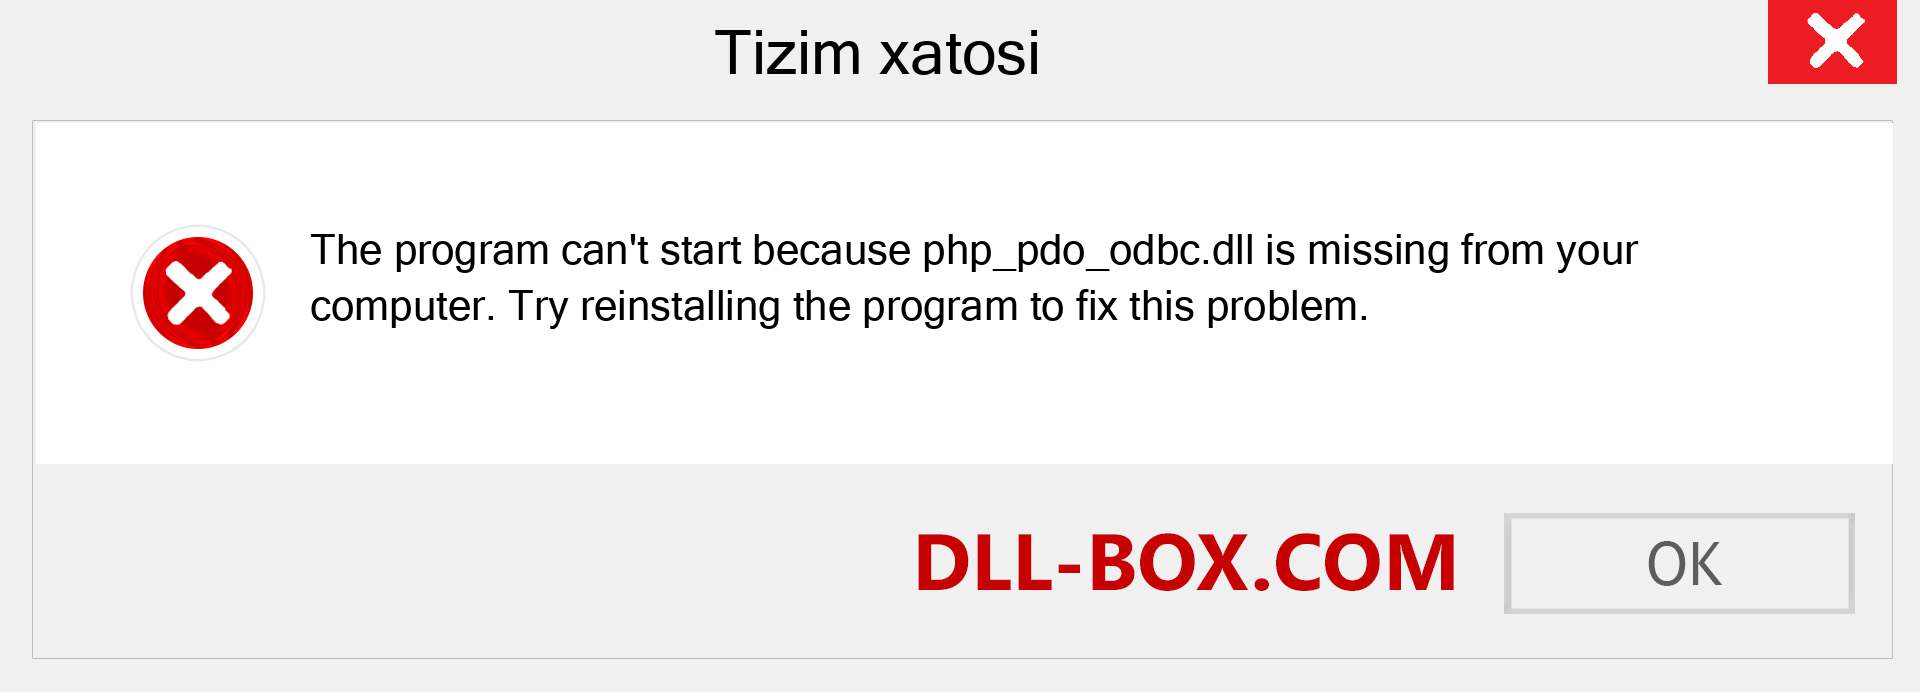 php_pdo_odbc.dll fayli yo'qolganmi?. Windows 7, 8, 10 uchun yuklab olish - Windowsda php_pdo_odbc dll etishmayotgan xatoni tuzating, rasmlar, rasmlar